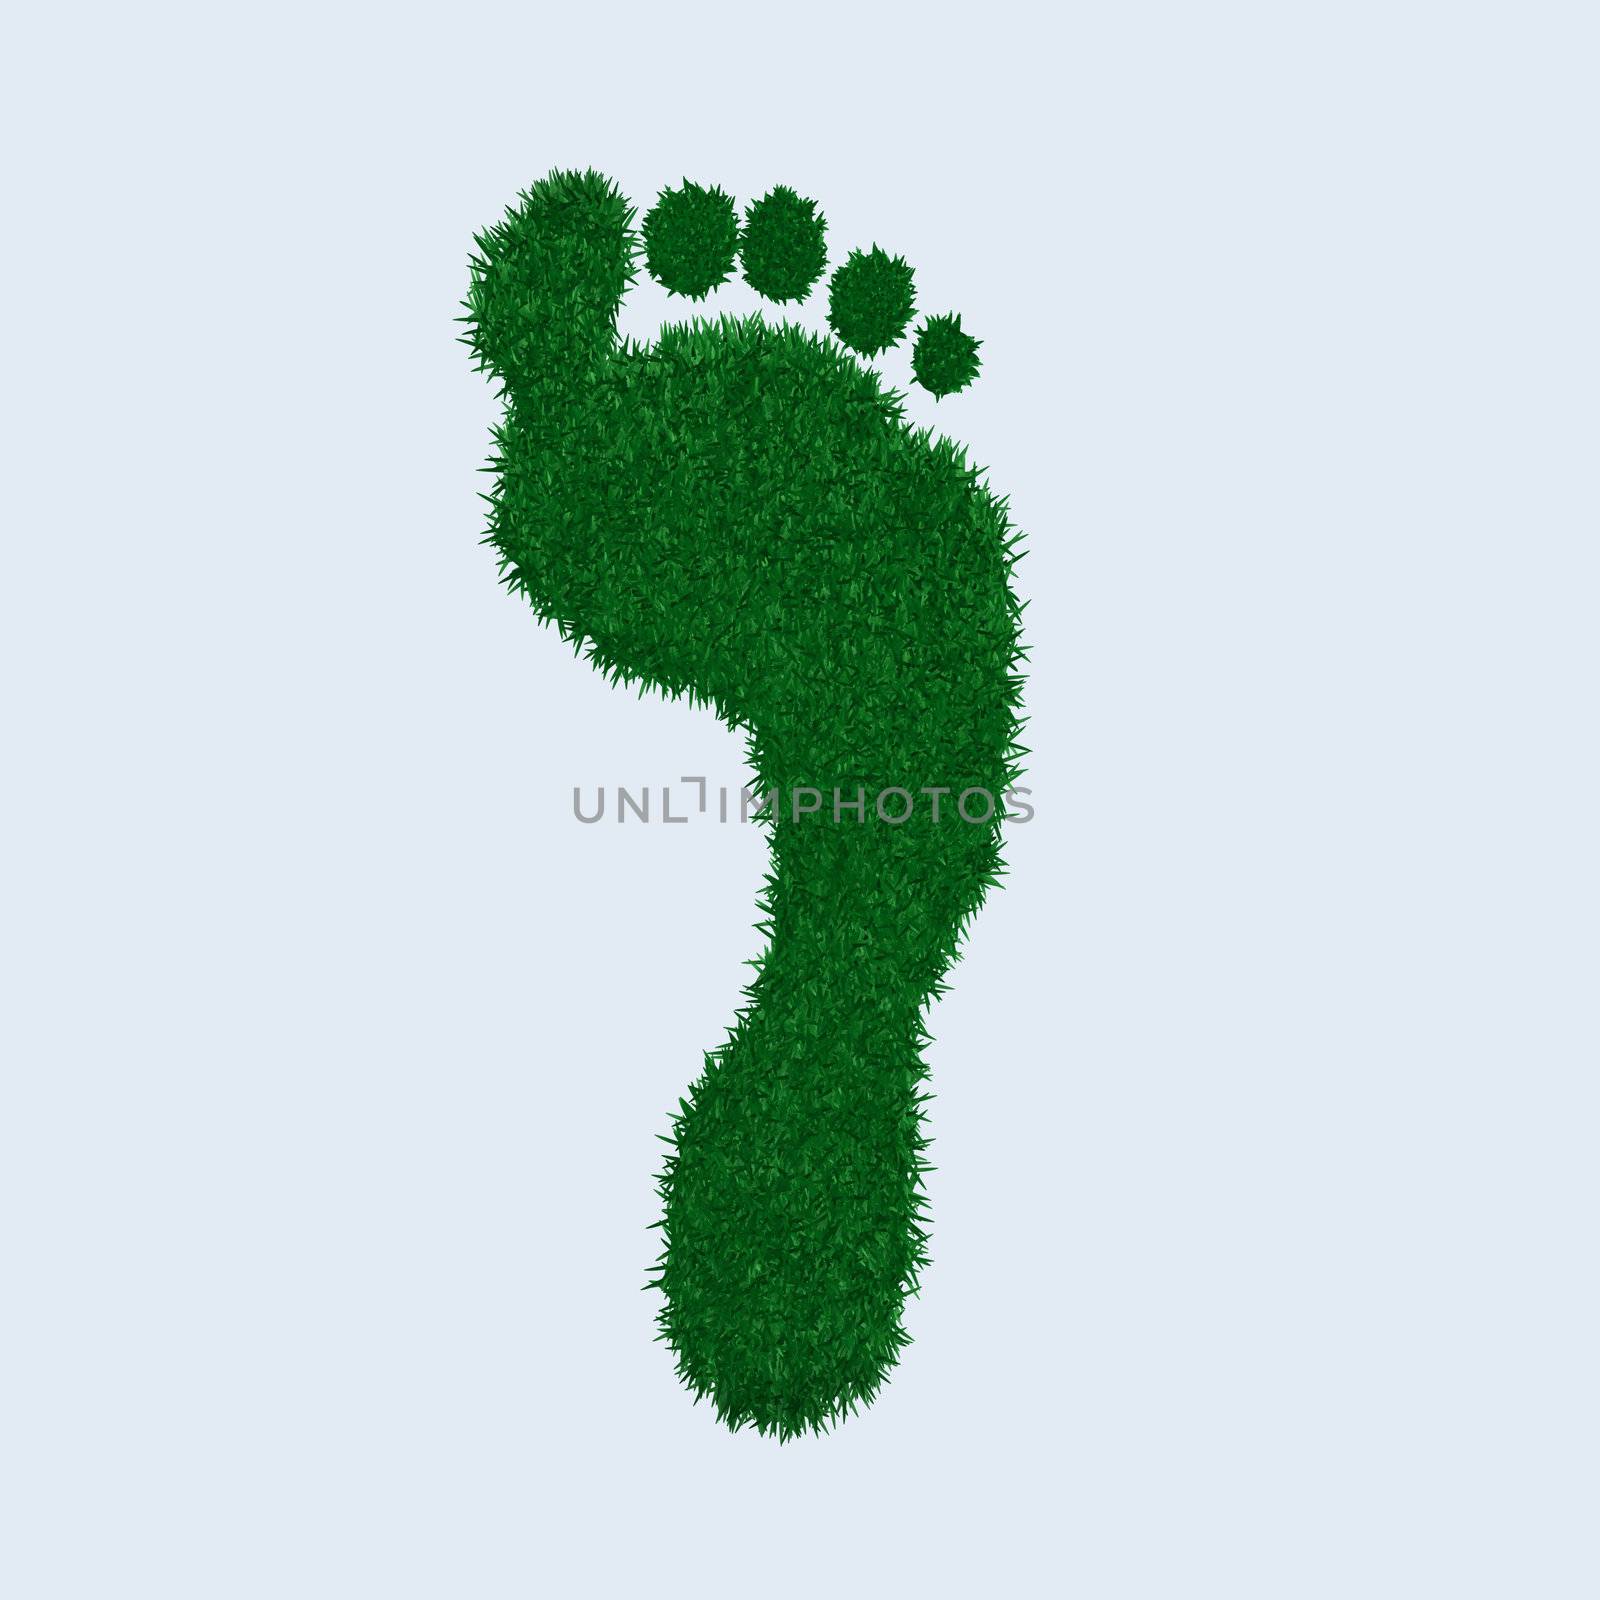 Image of a green grass footprint.